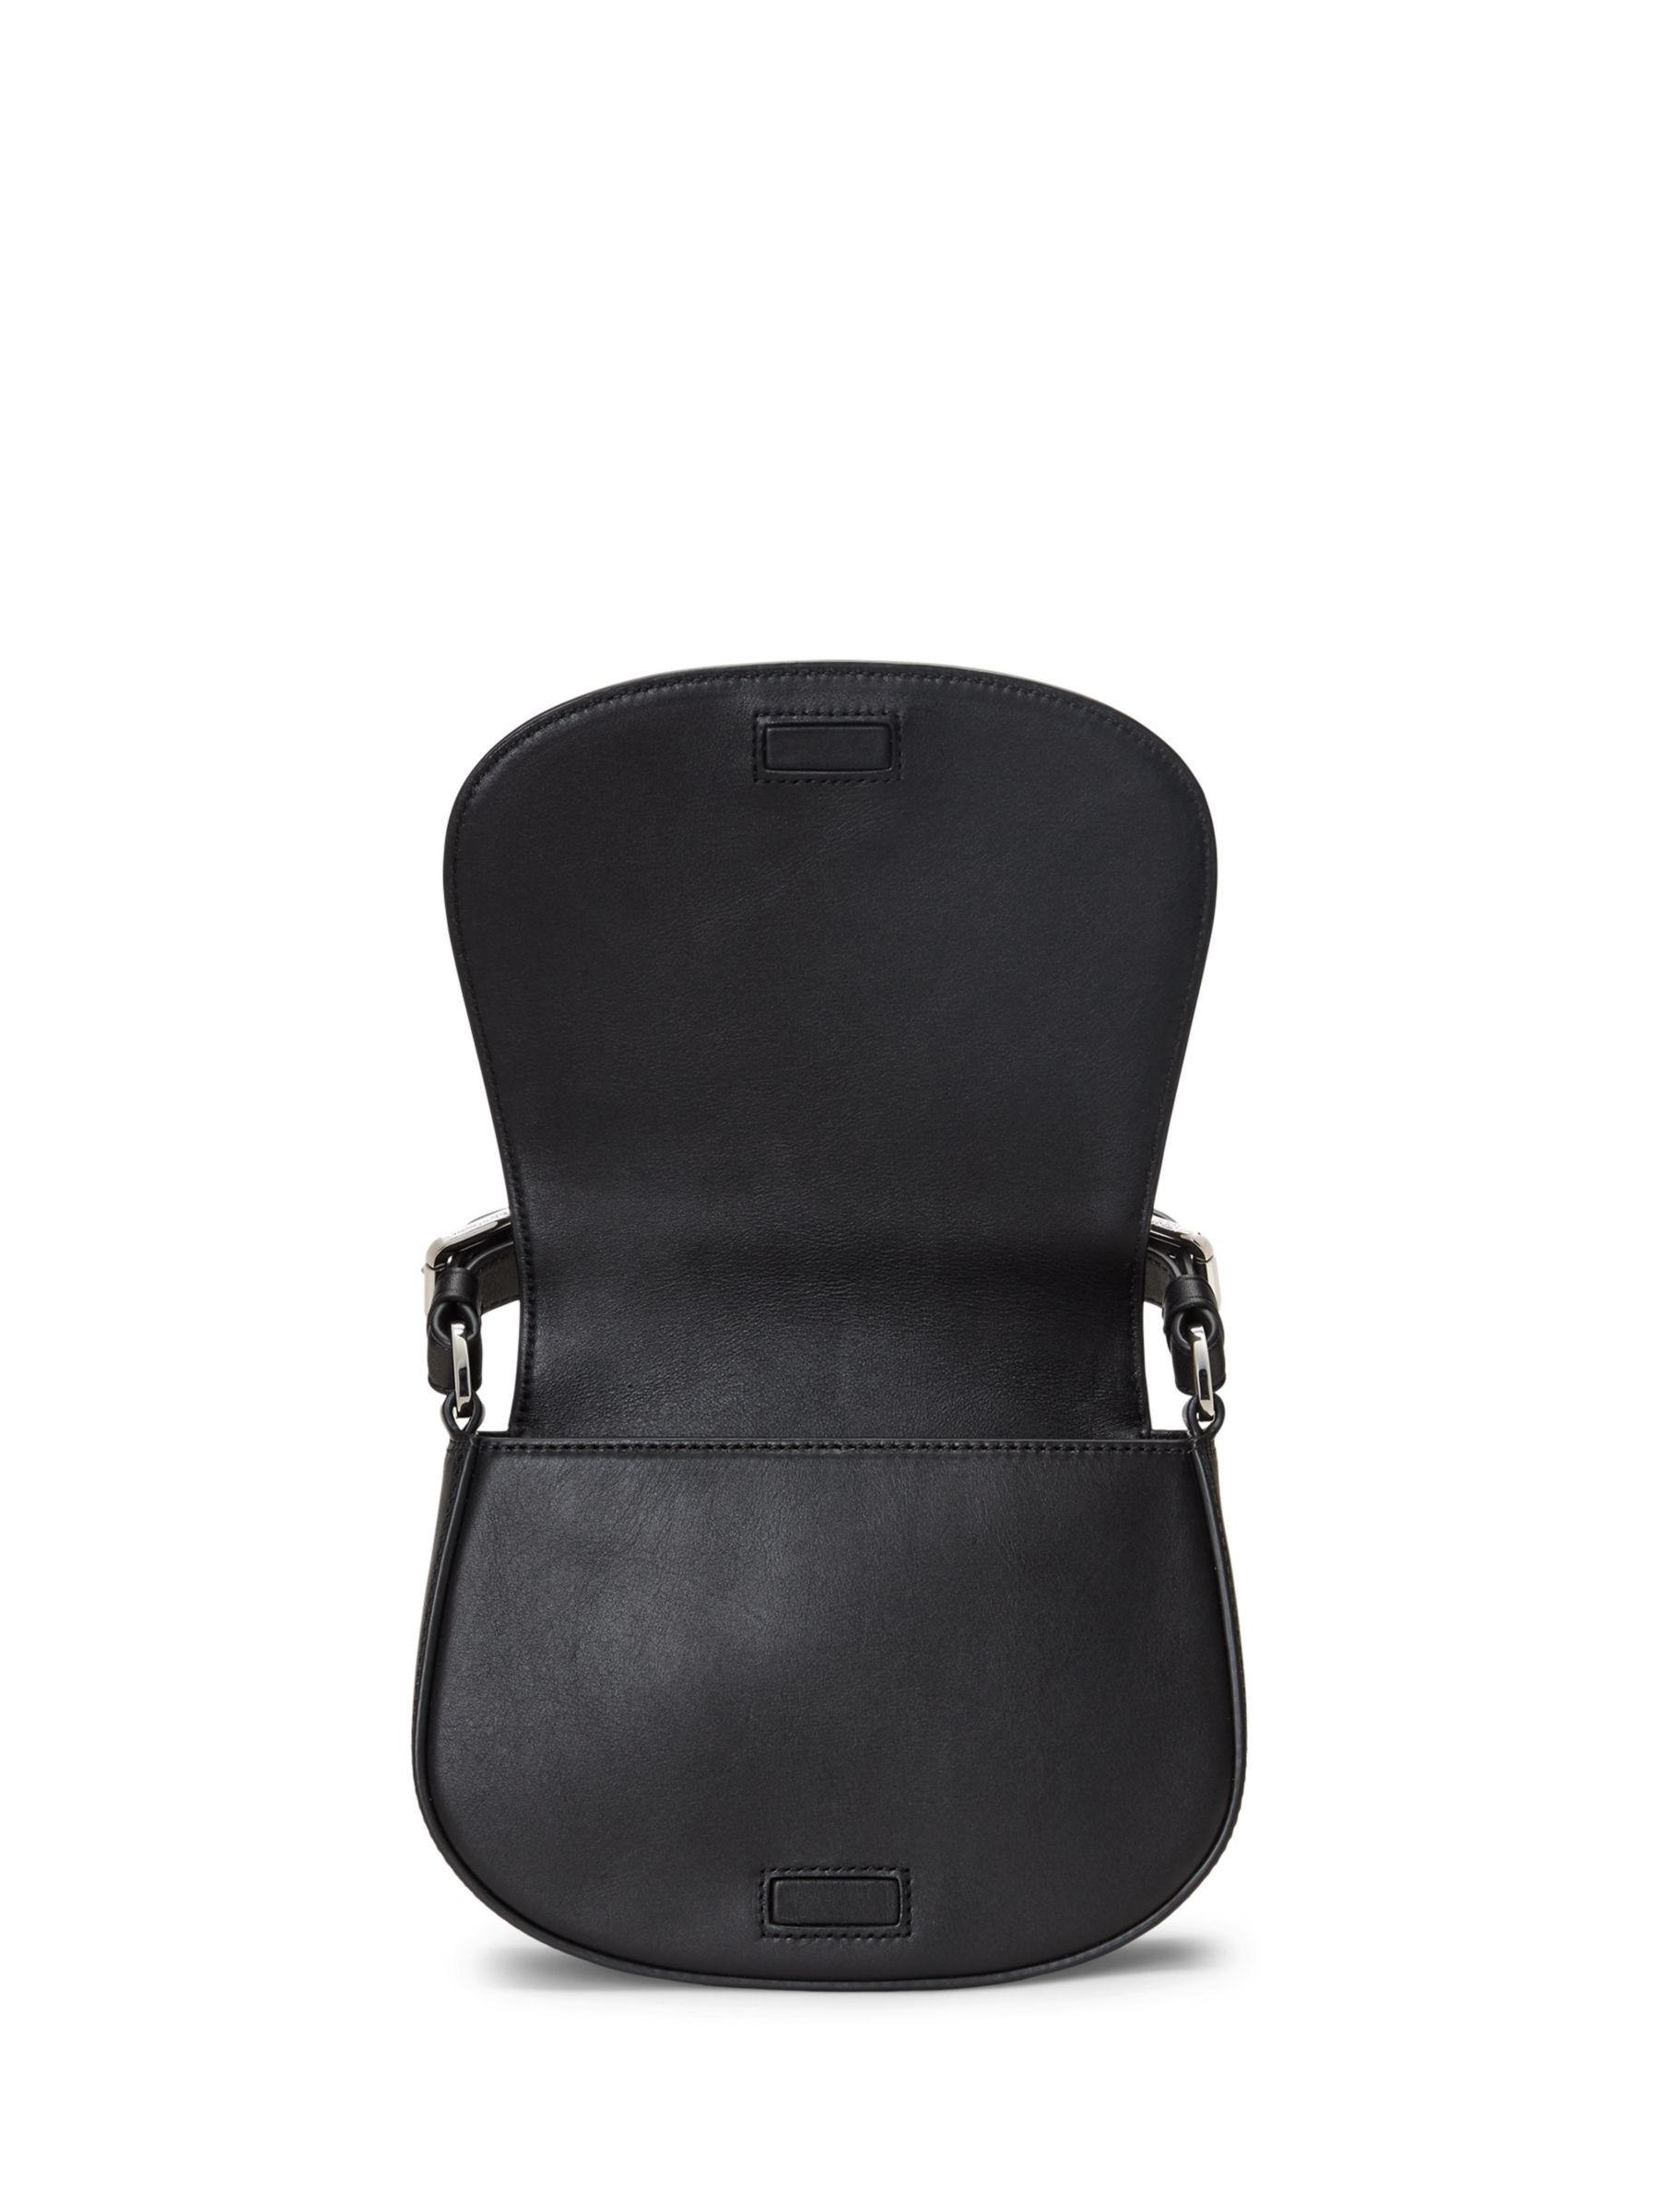 Buy Lauren Ralph Lauren Tanner Houndstooth Cross Body Bag, Black/Multi Online at johnlewis.com